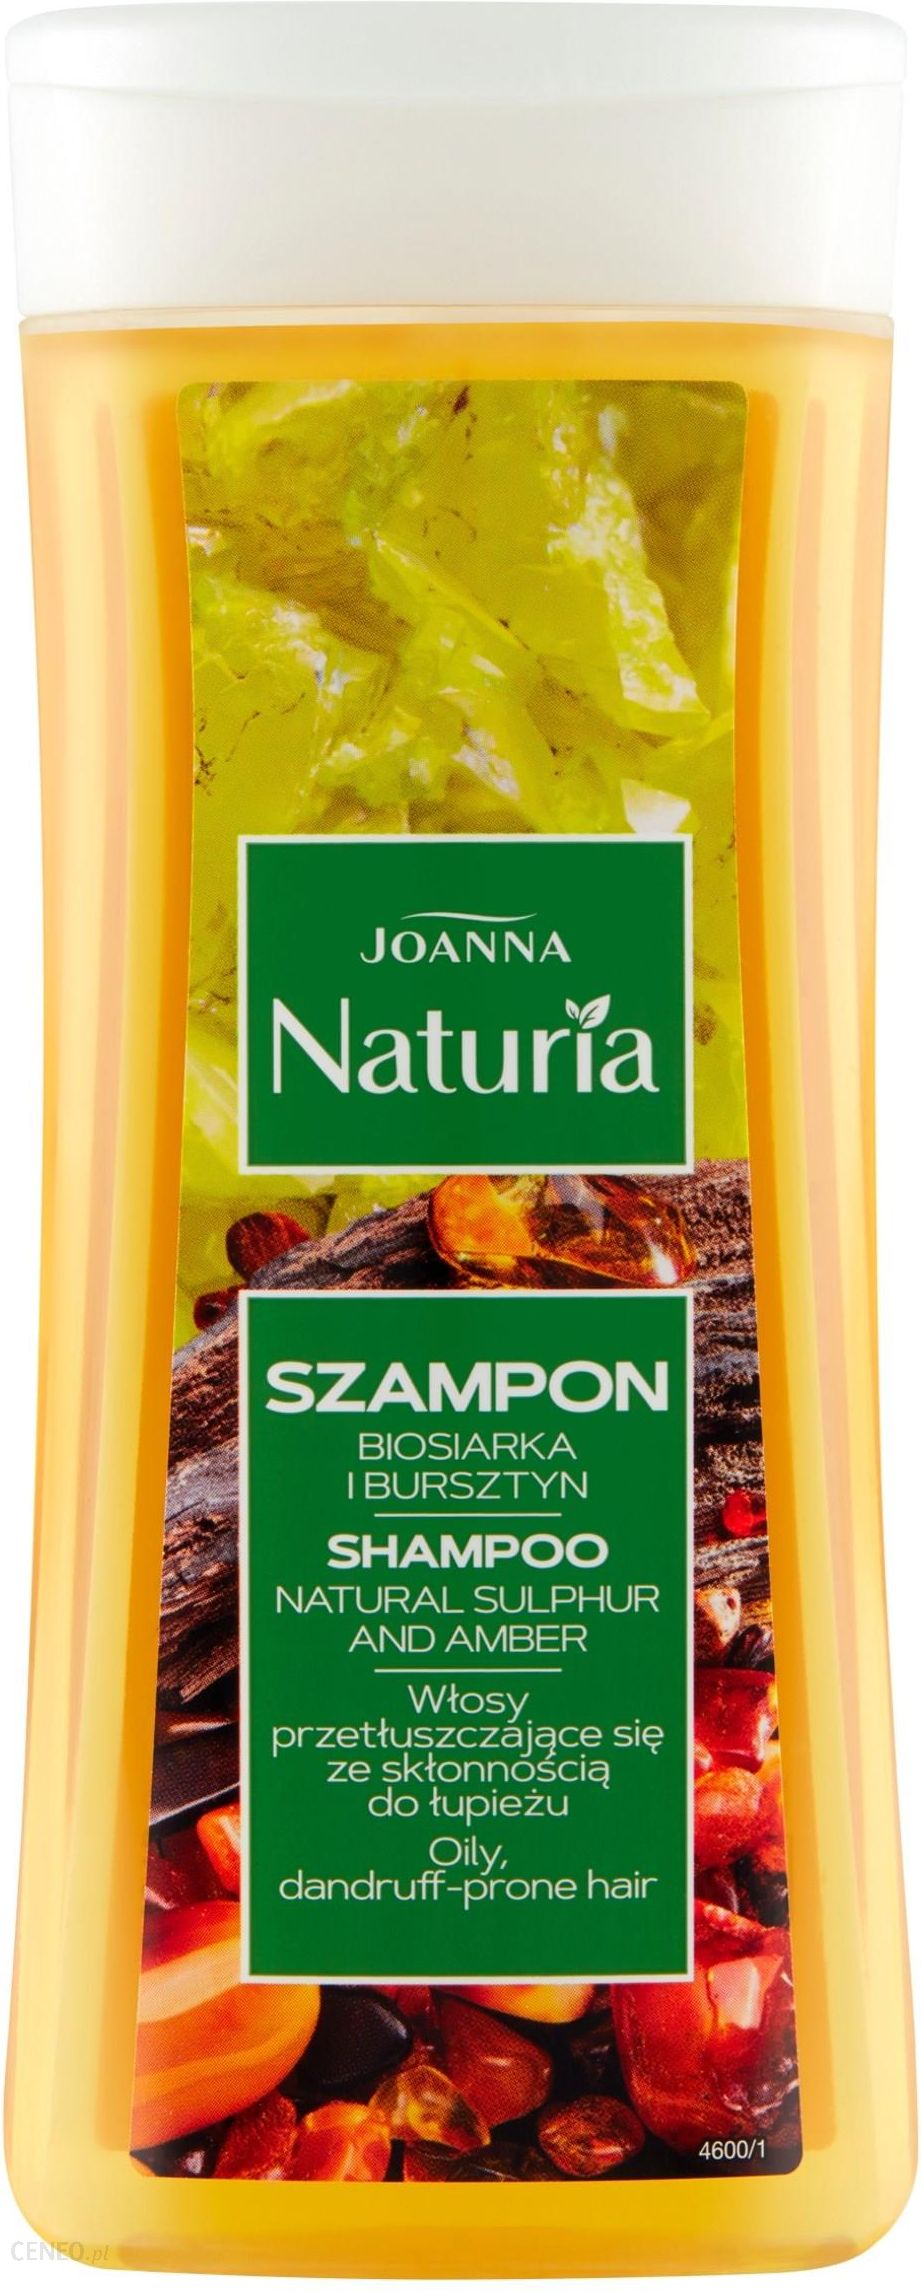 joanna naturia szampon drogeria natura